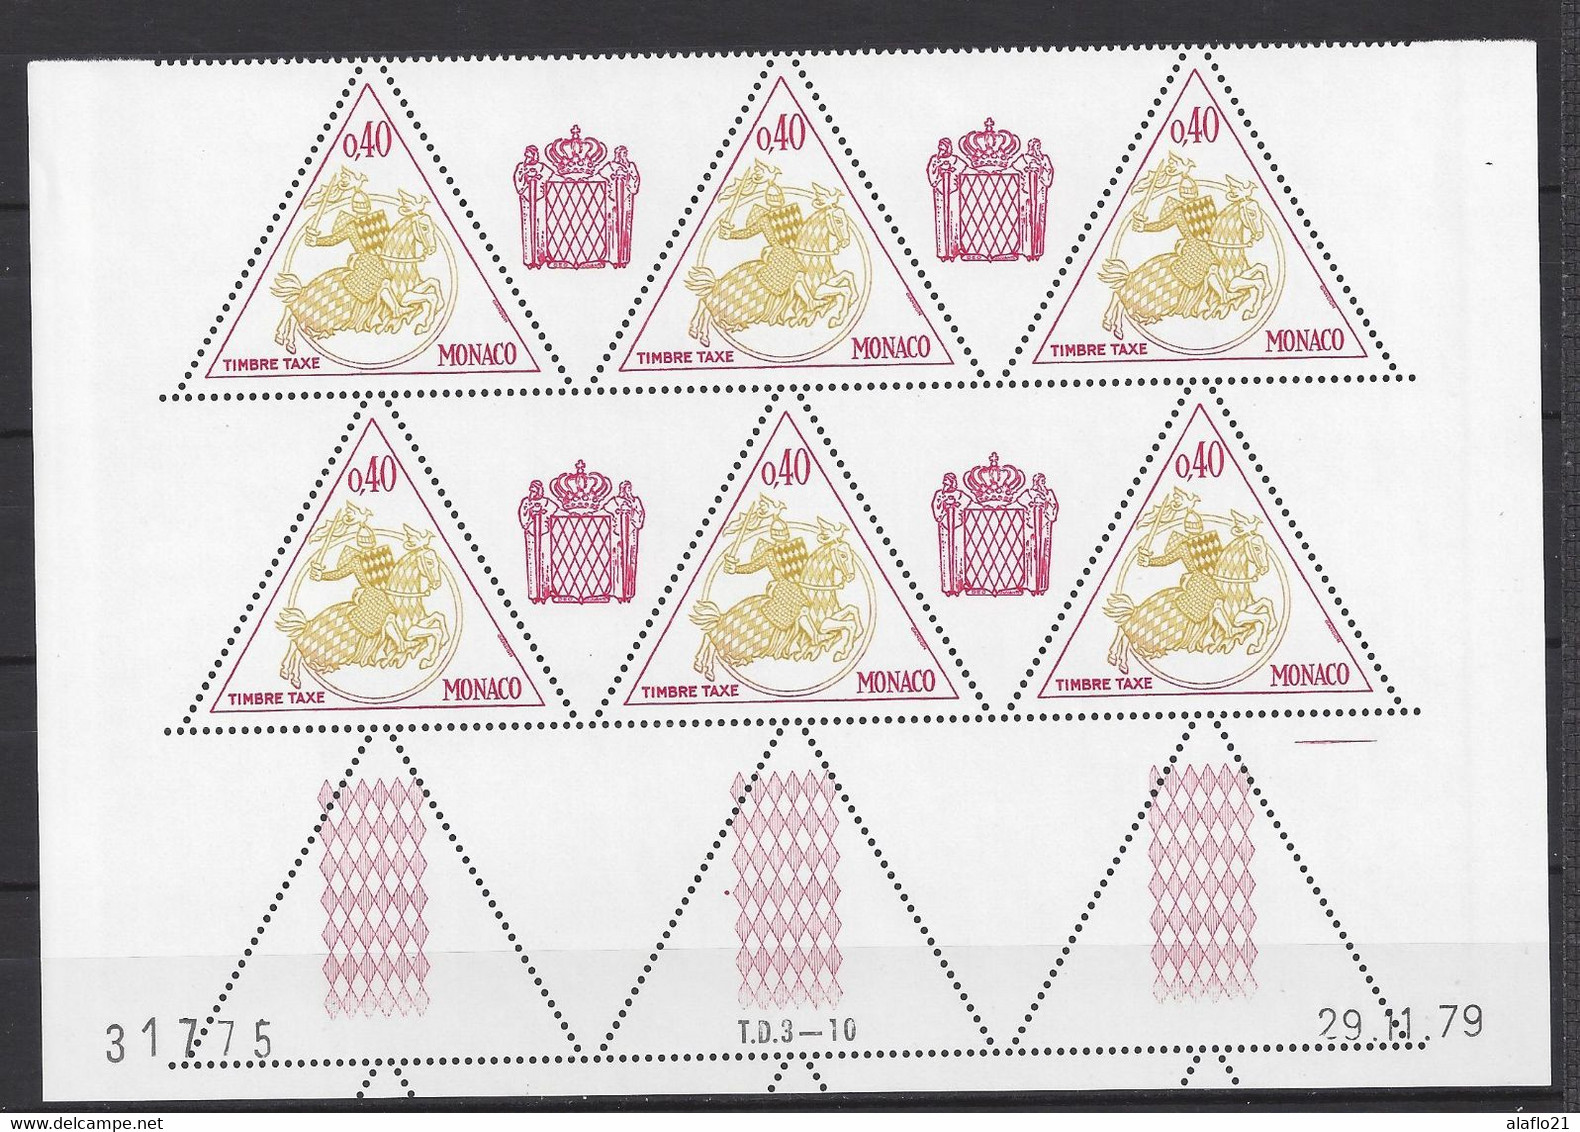 MONACO - TAXE N° 68 - SCEAU PRINCIER - Bloc De 6 COIN DATE - NEUF SANS CHARNIERE - 29/11/79 - Postage Due